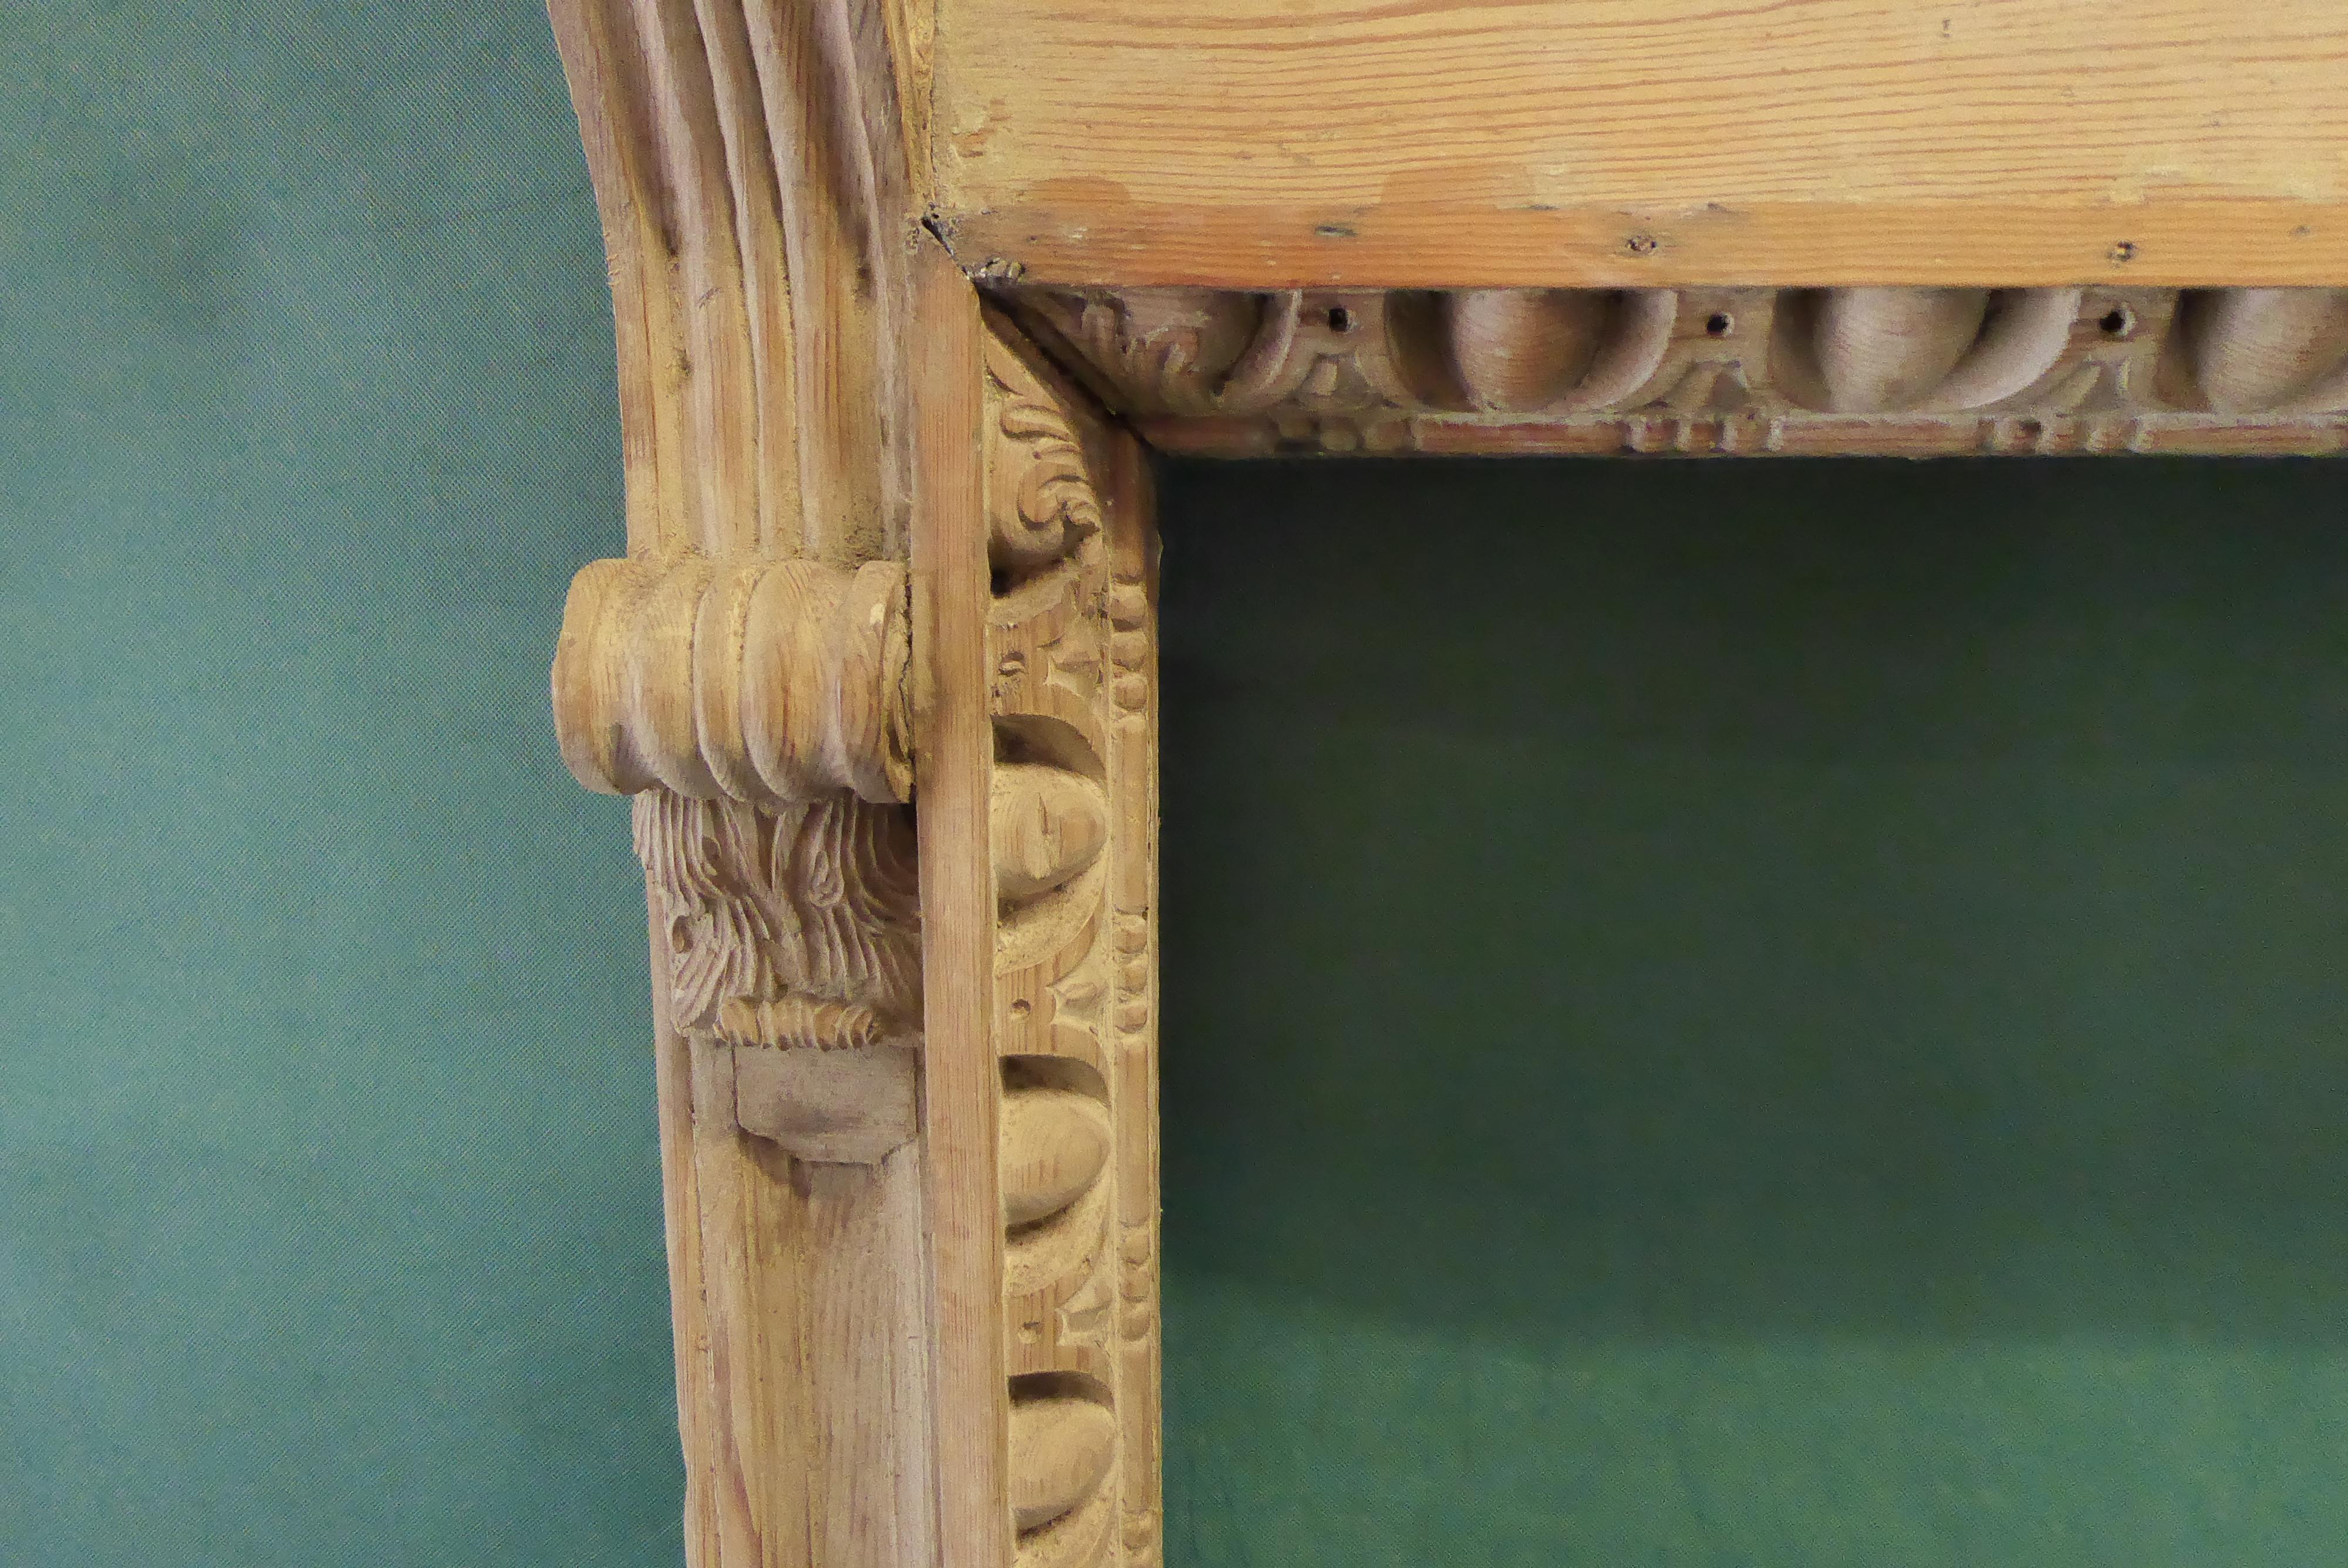 Feine George II Mantlepiece ursprünglich in Edinburgh untergebracht
Gute knackige Schnitzerei, Diese wurde in ihrer Geschichte bemalt und befindet sich derzeit in ihrem ursprünglichen geschnitzten Zustand. Es kann bemalt oder gewachst oder einfach